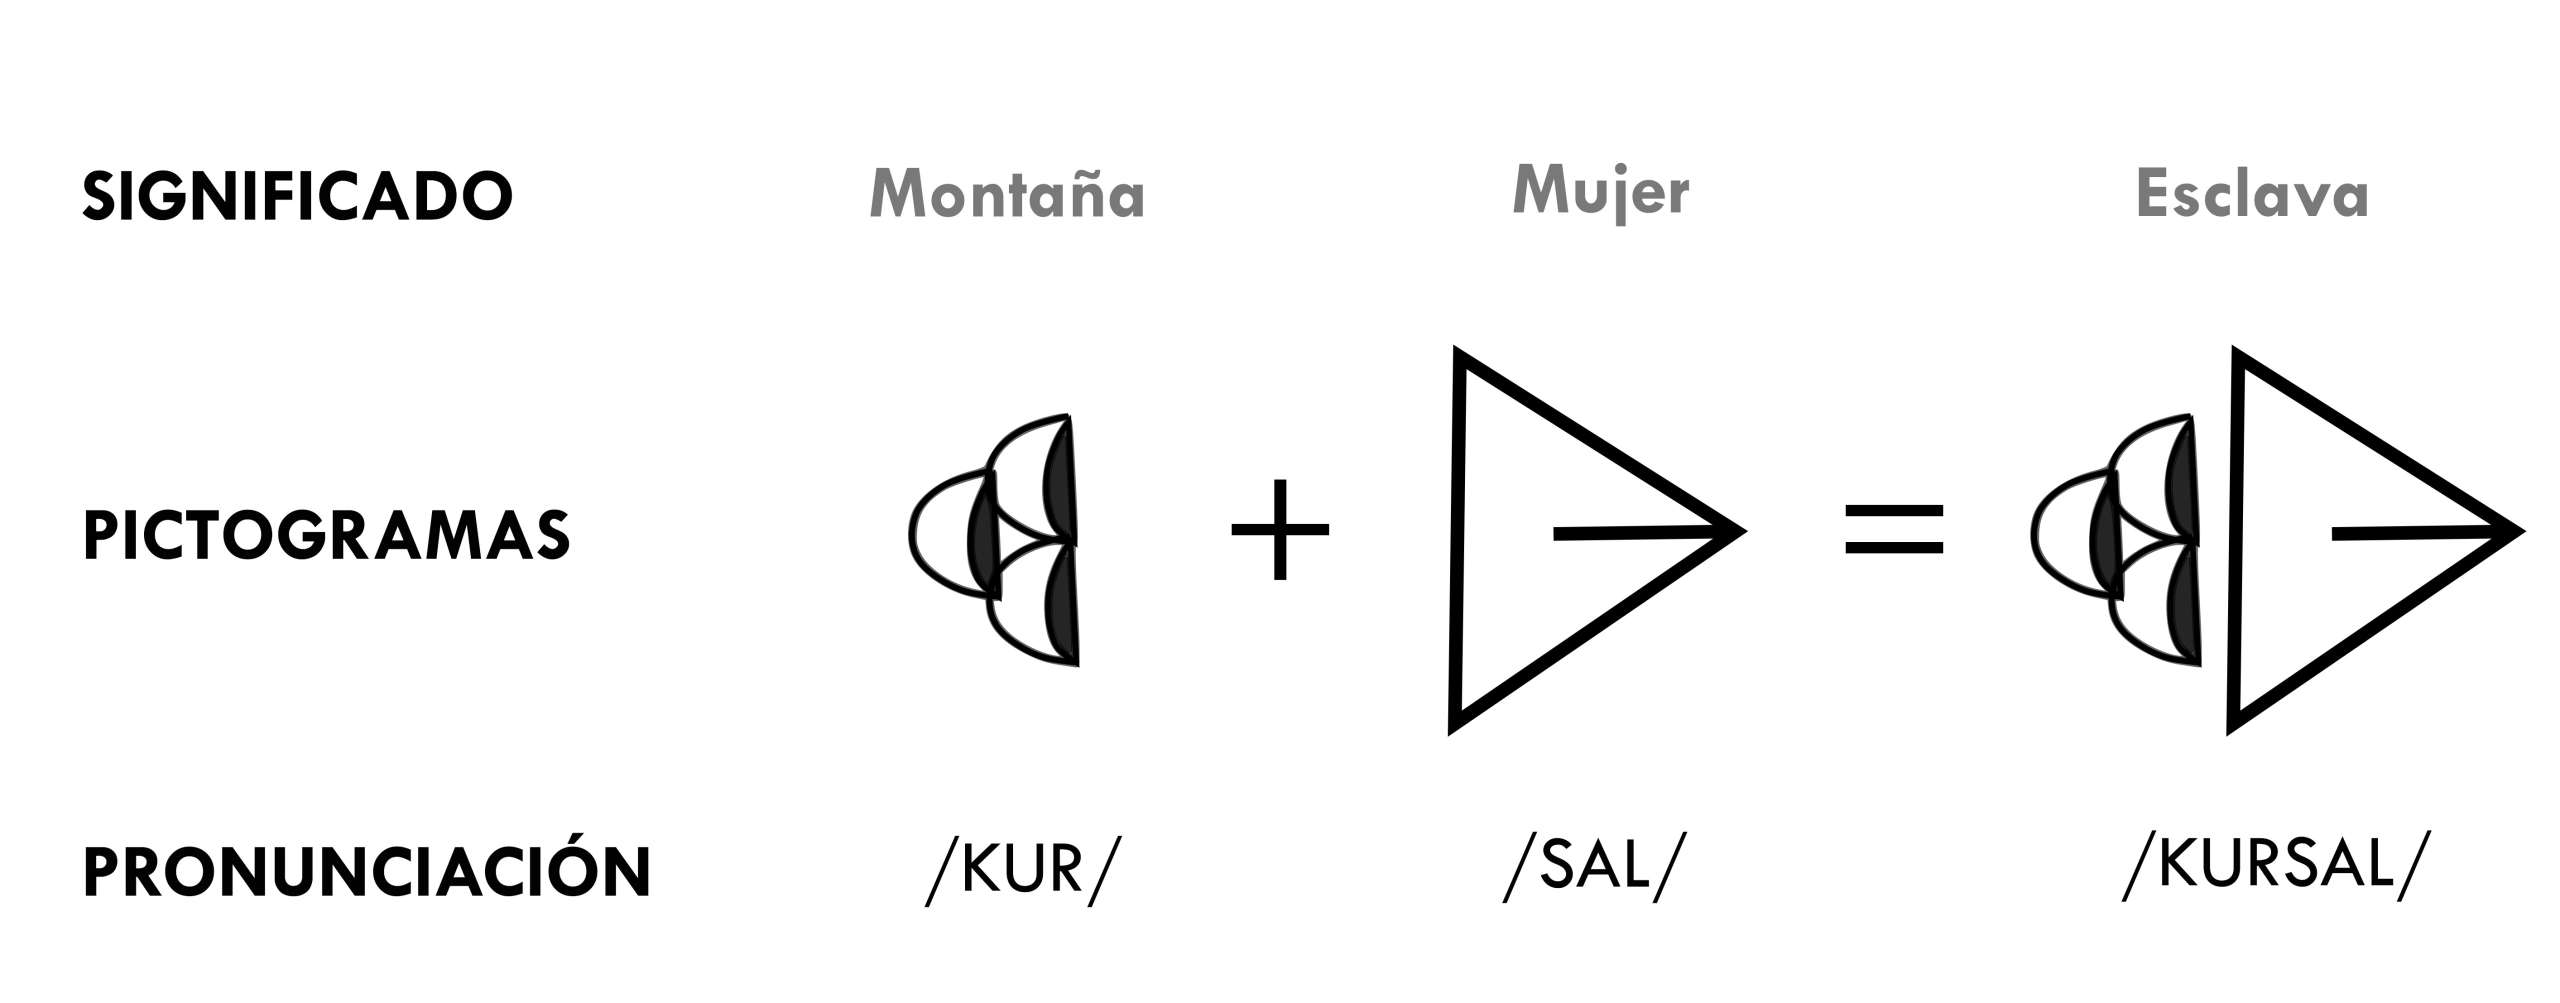 Evolución de las palabras en escritura cuneiforme.